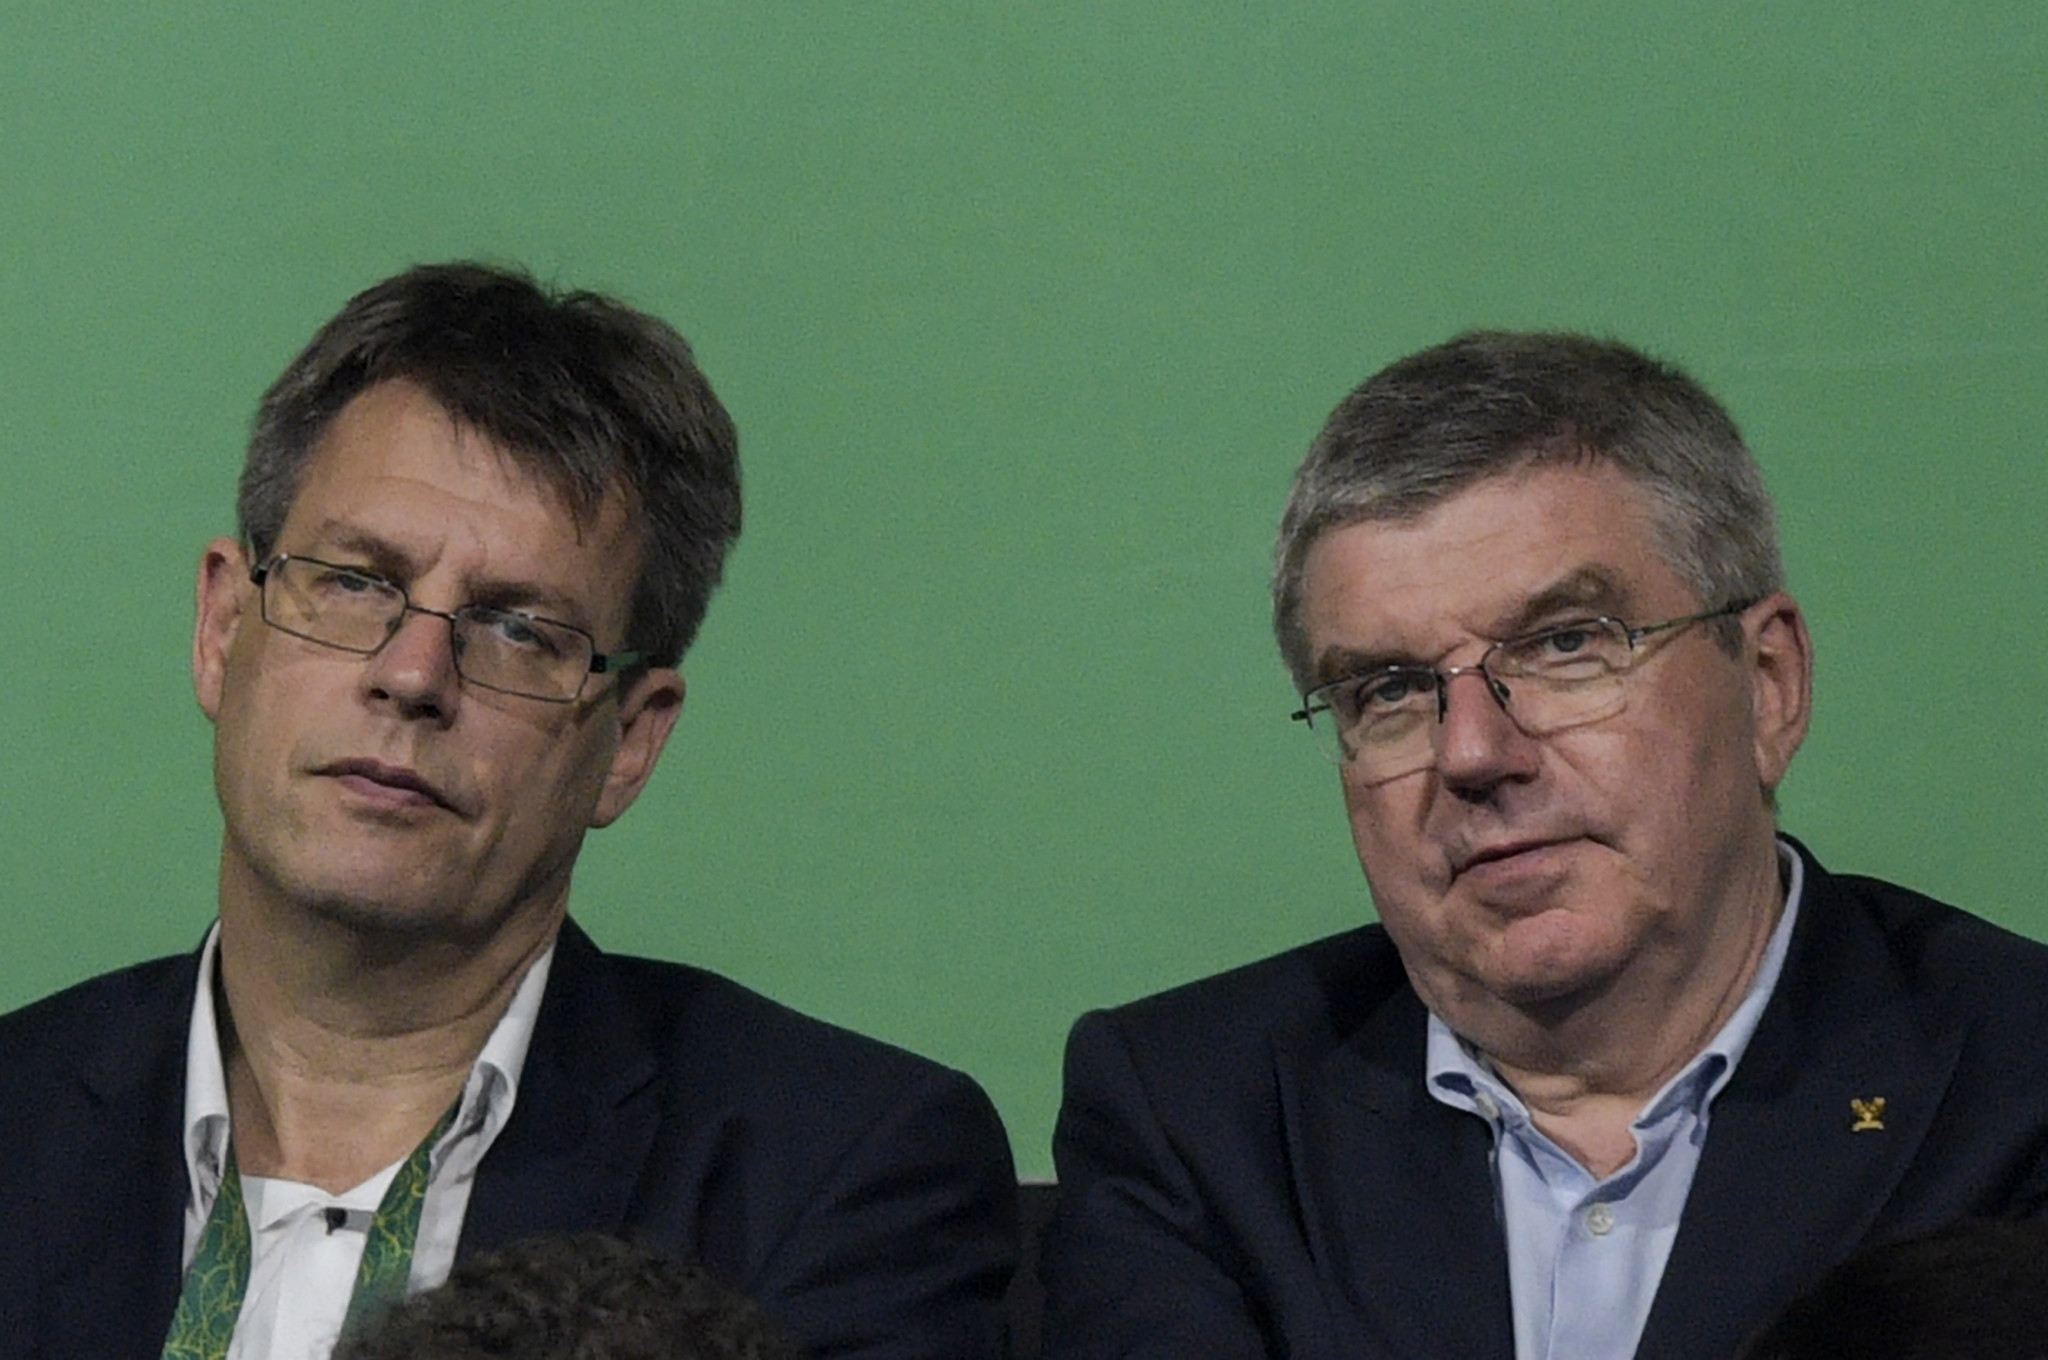 DOSB Presidential candidate Weikert suggests German Olympic bid "as soon as possible"